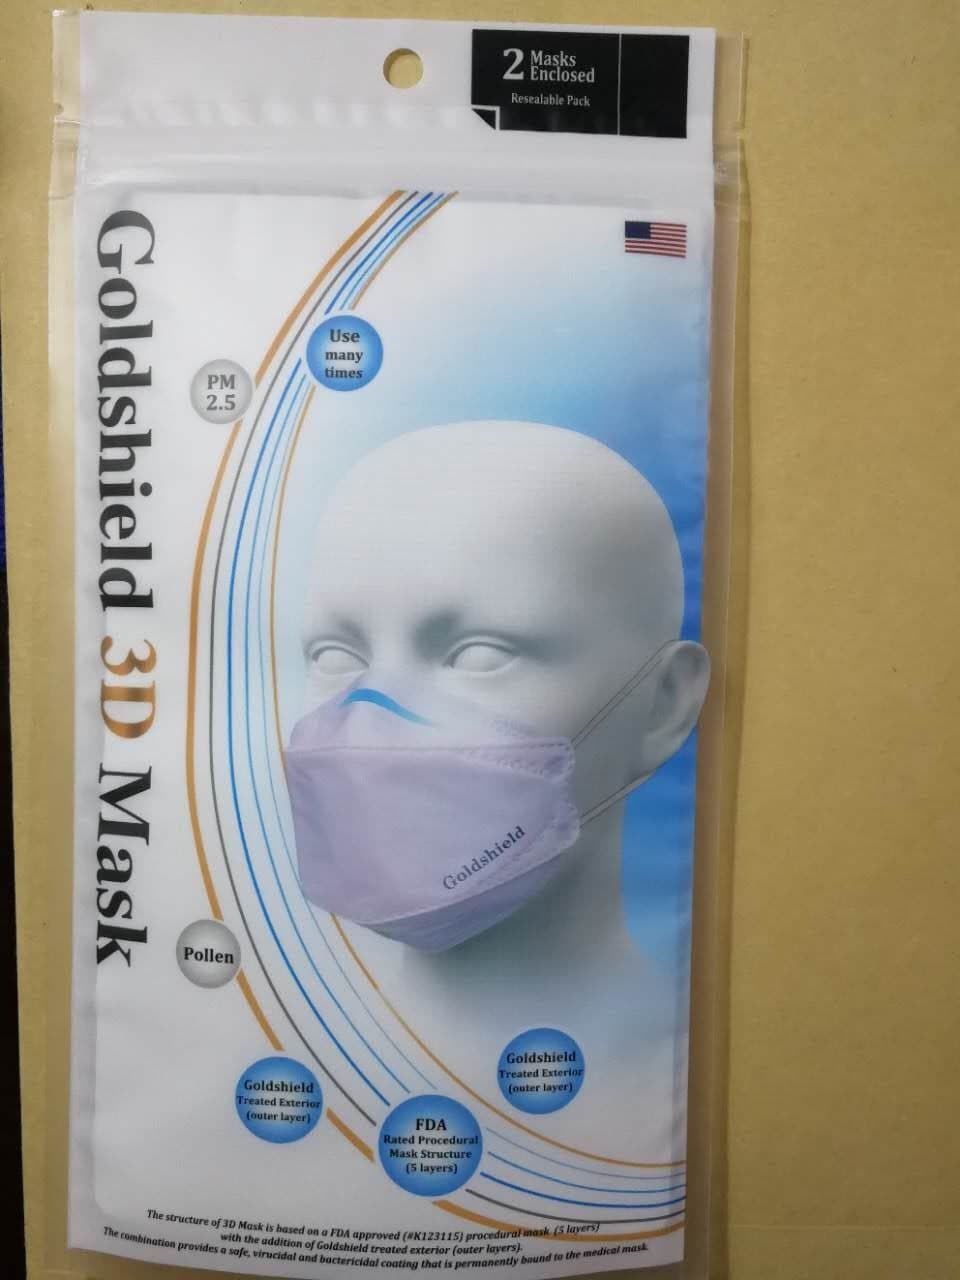 Goldshield 3DN95 medical mask